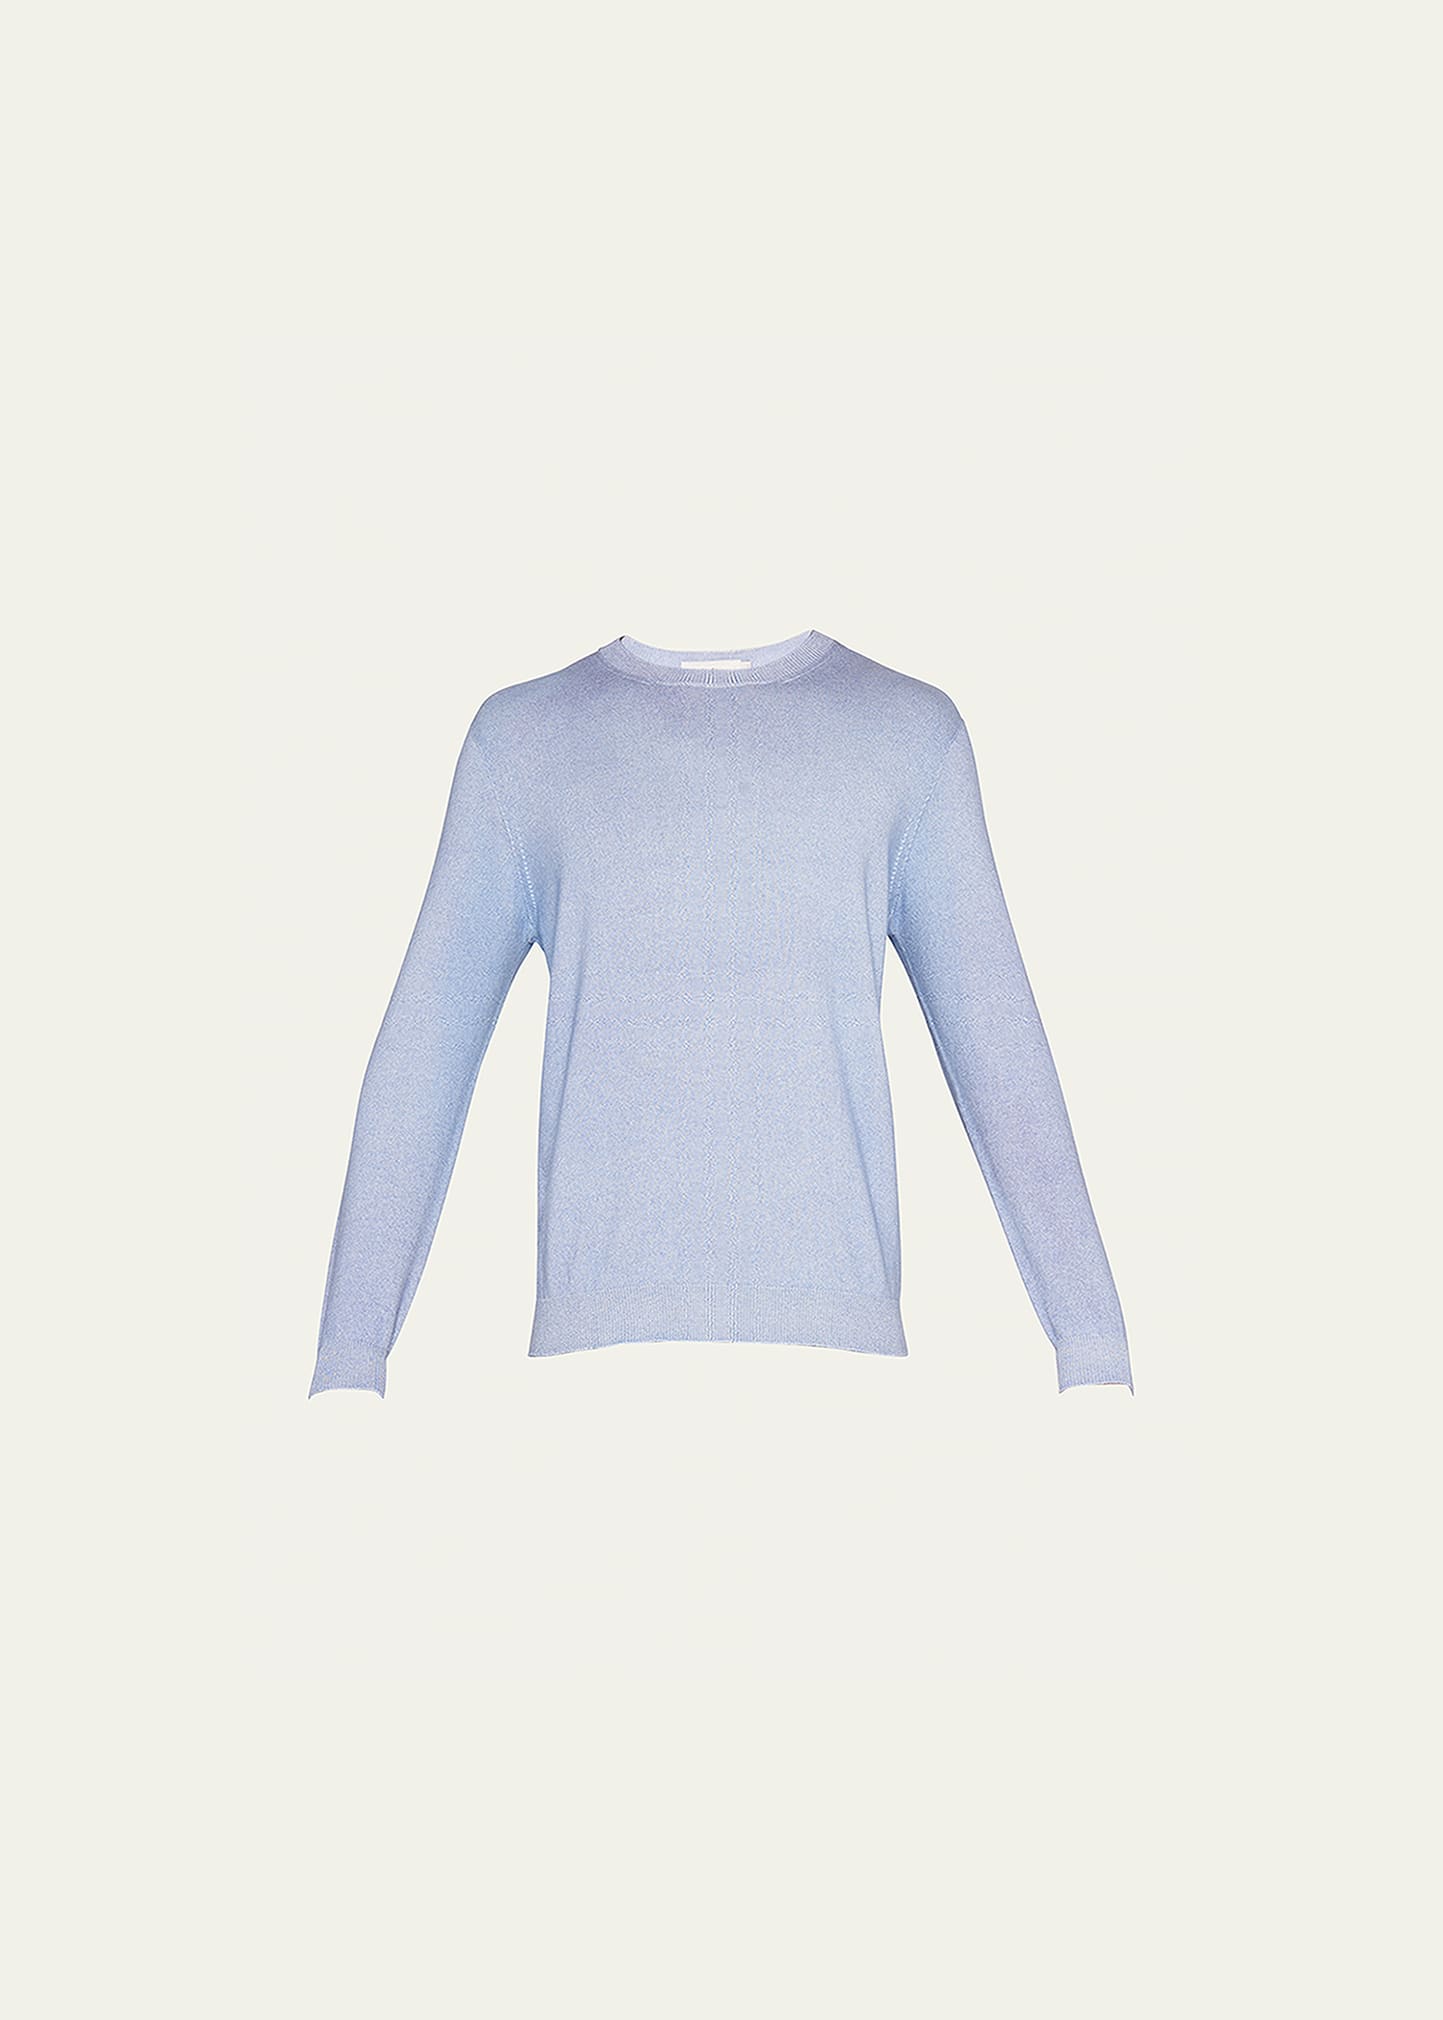 Men's Garment-Dyed Cotton-Cashmere Crewneck Sweater